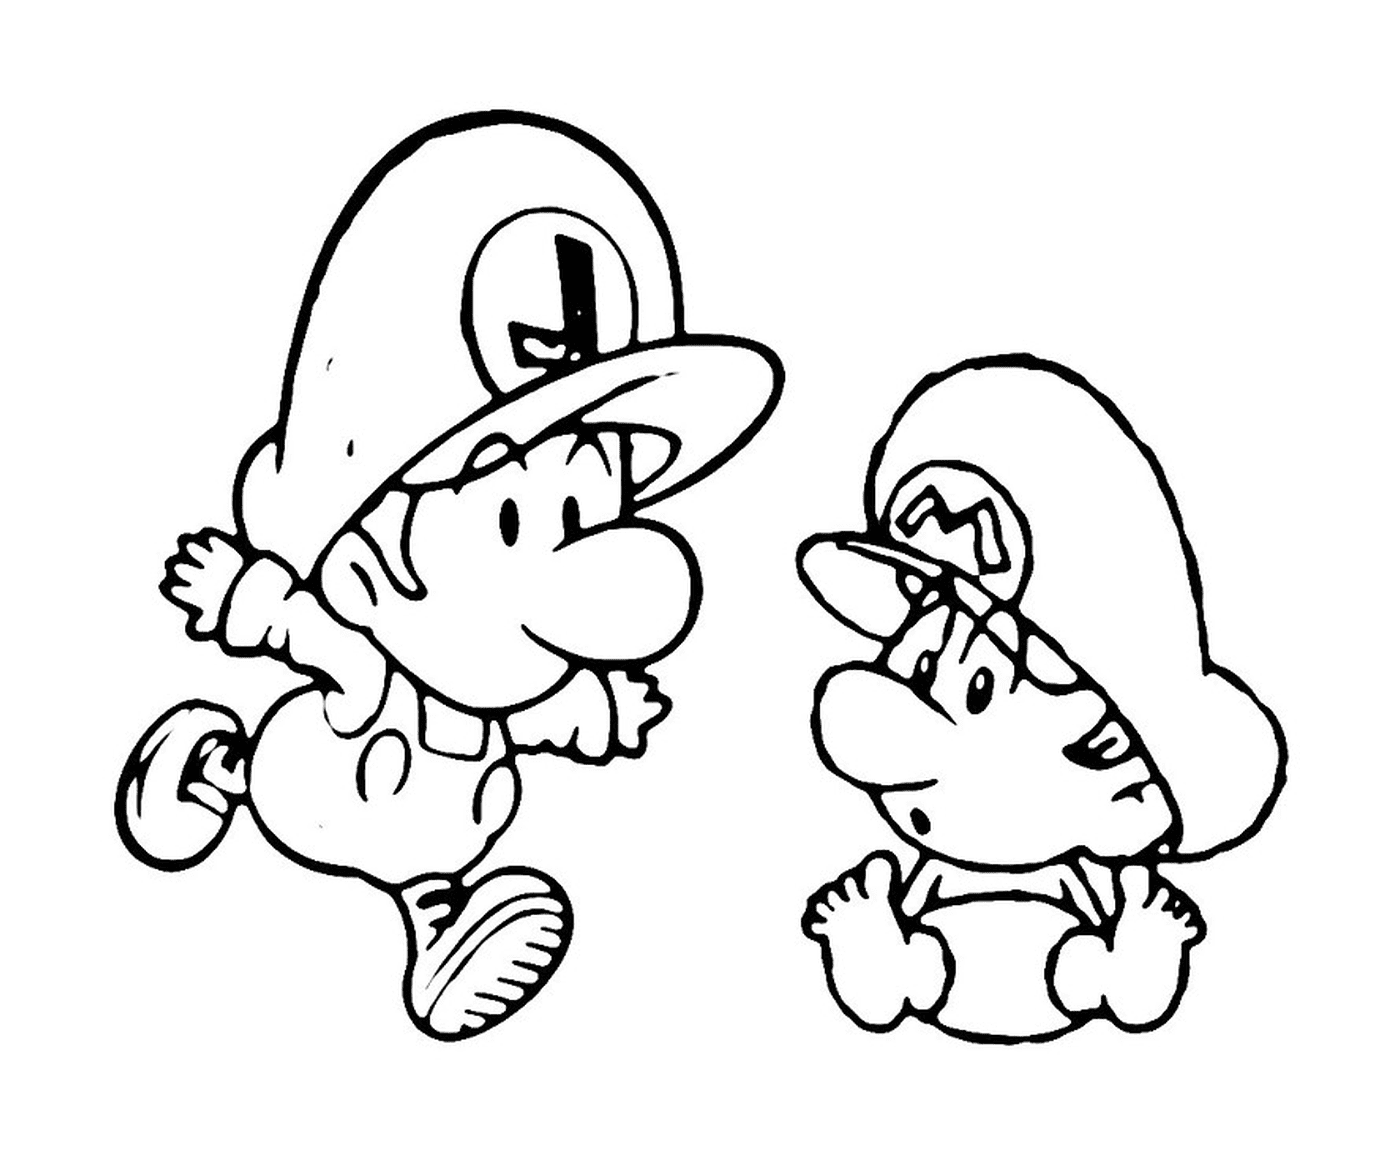  Duo Mario y Luigi 